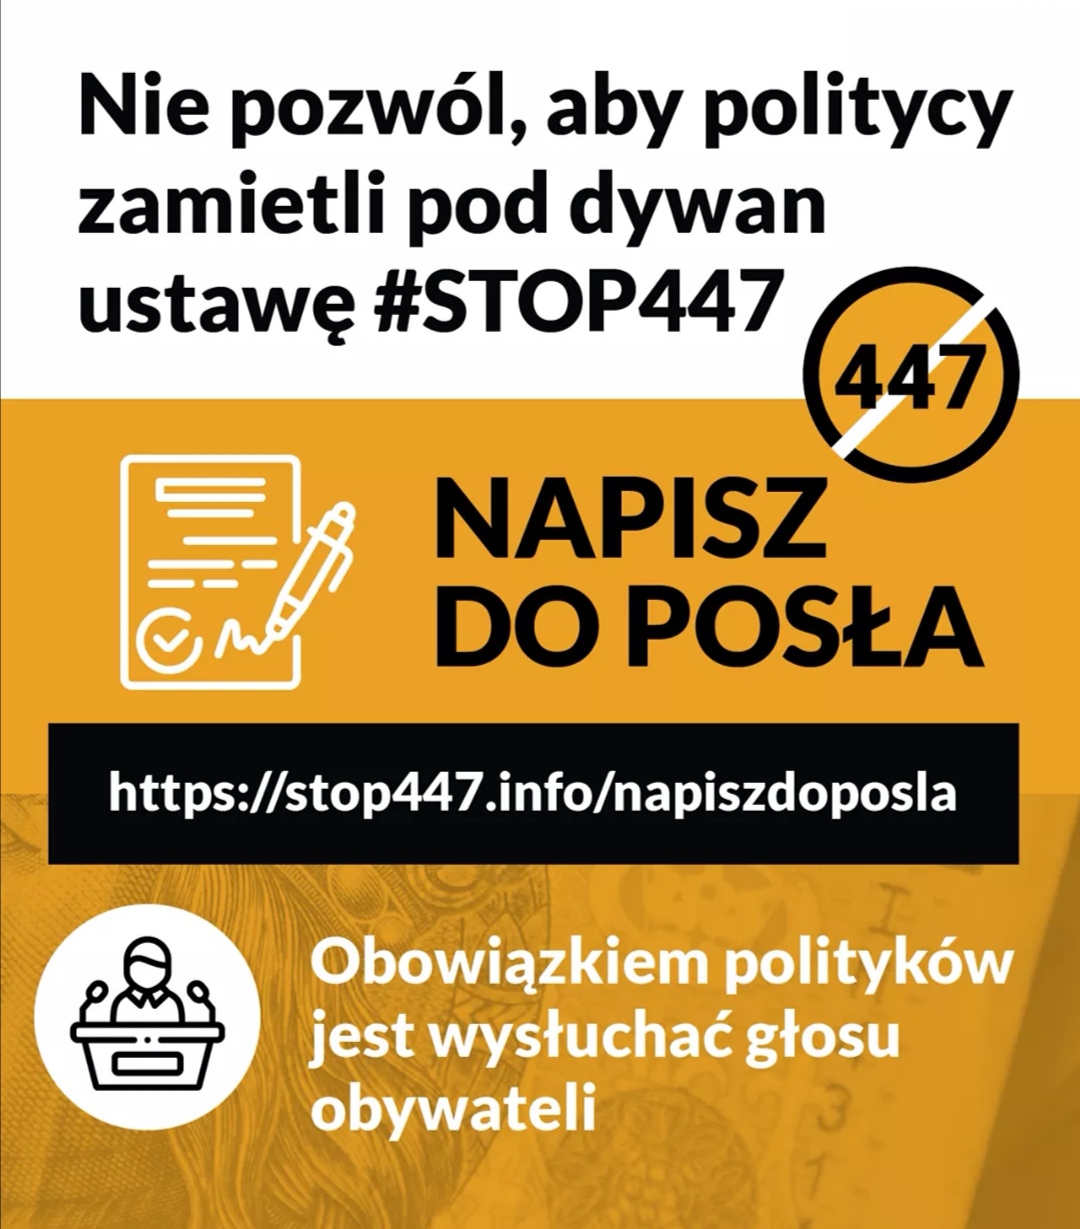 NAPISZ DO POSŁA
-https://stop447.info/napiszdoposla/